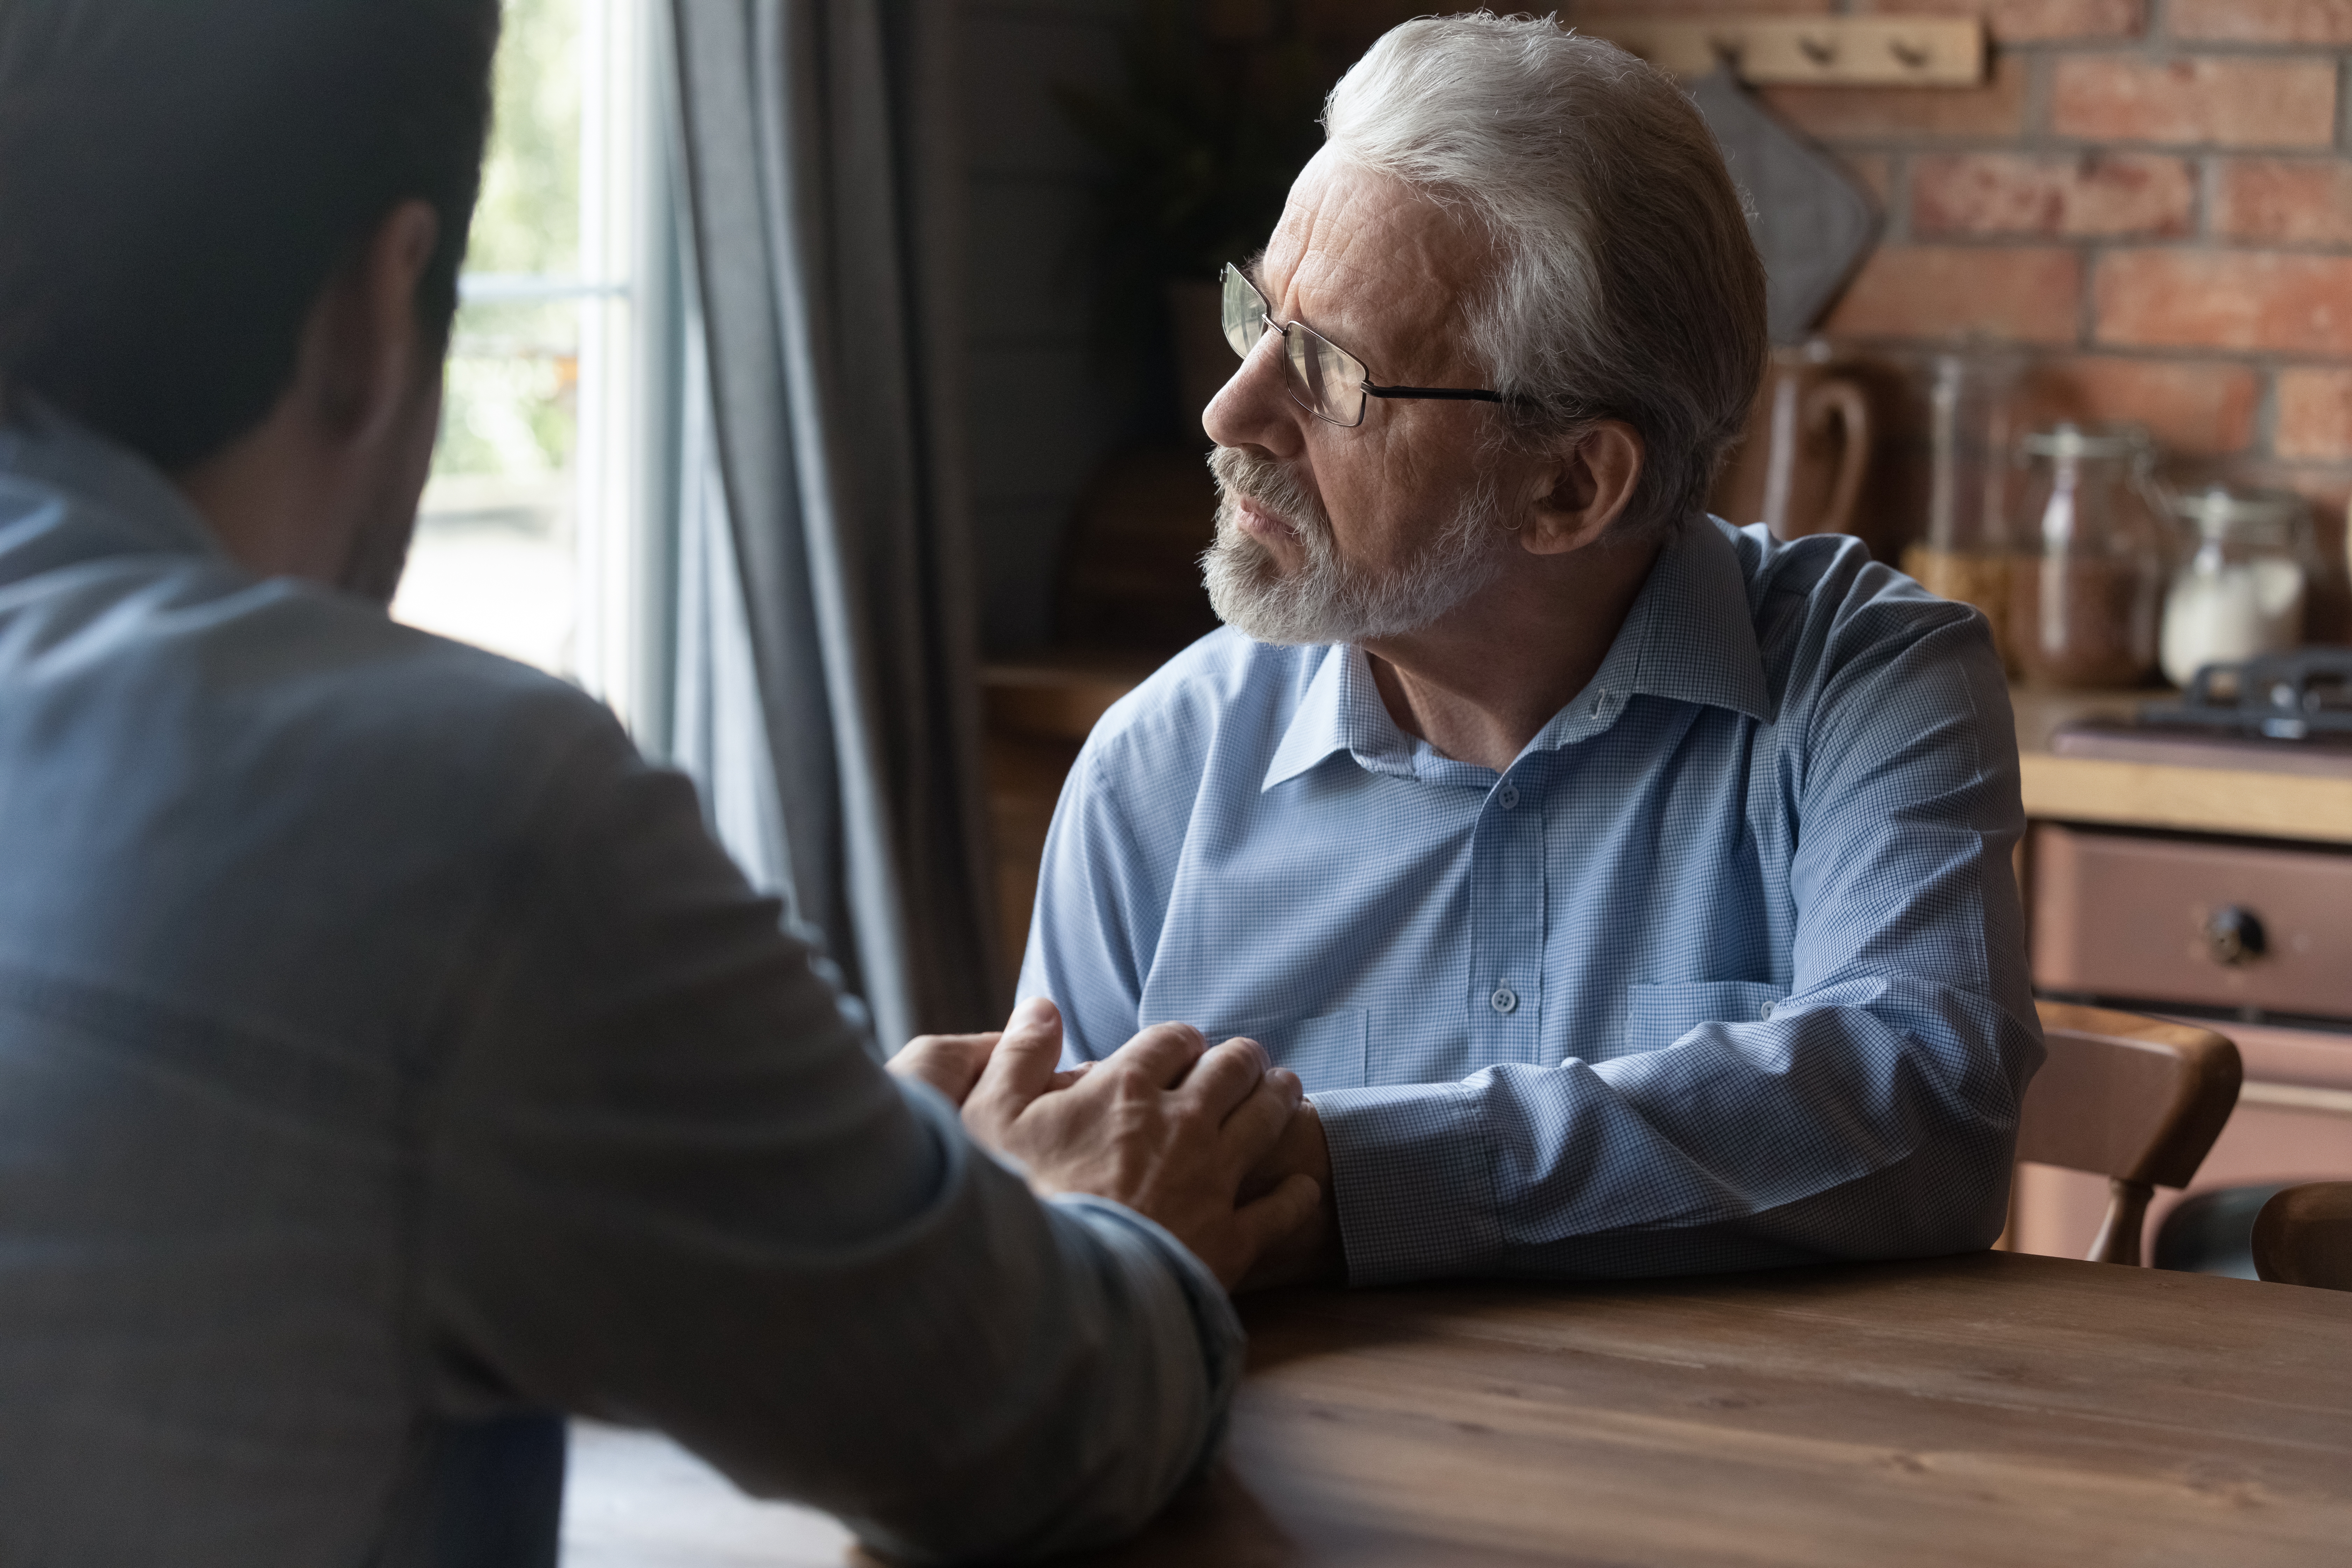 Un joven consuela a un hombre mayor que mira hacia otro lado | Foto: Shutterstock